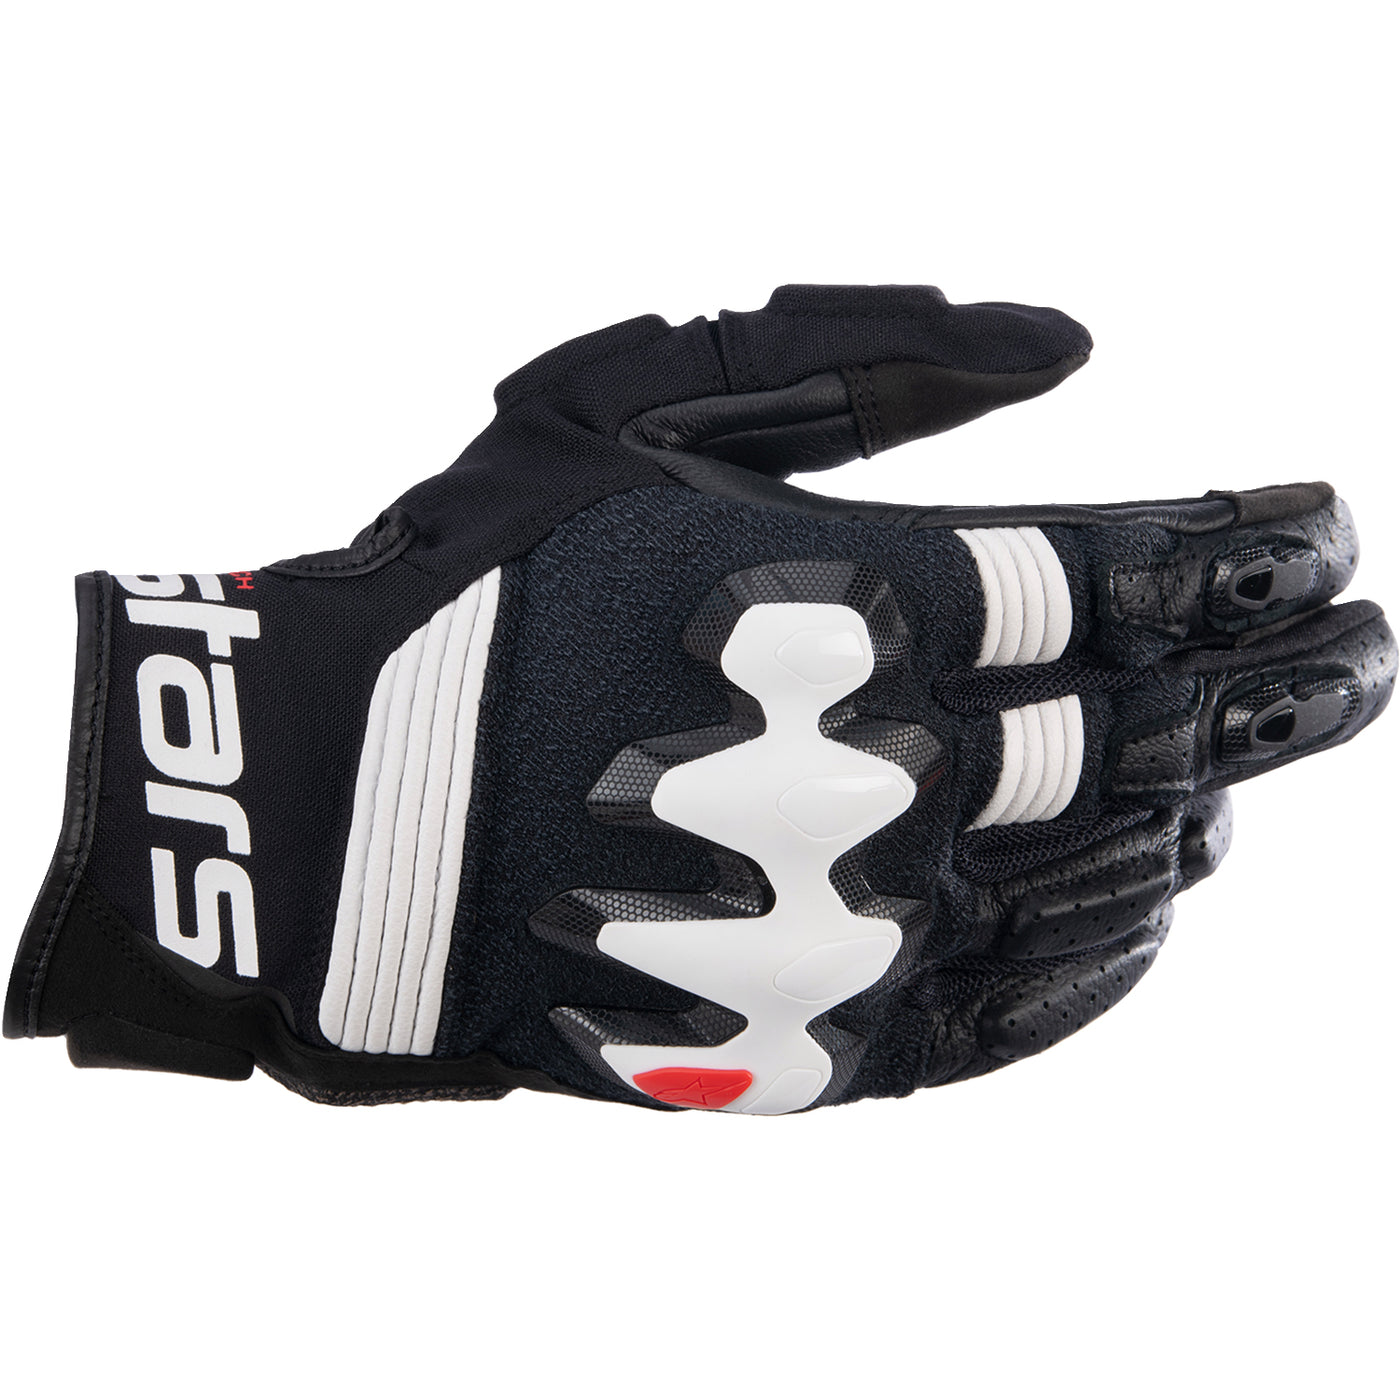 Alpinestars Halo Leather Gloves